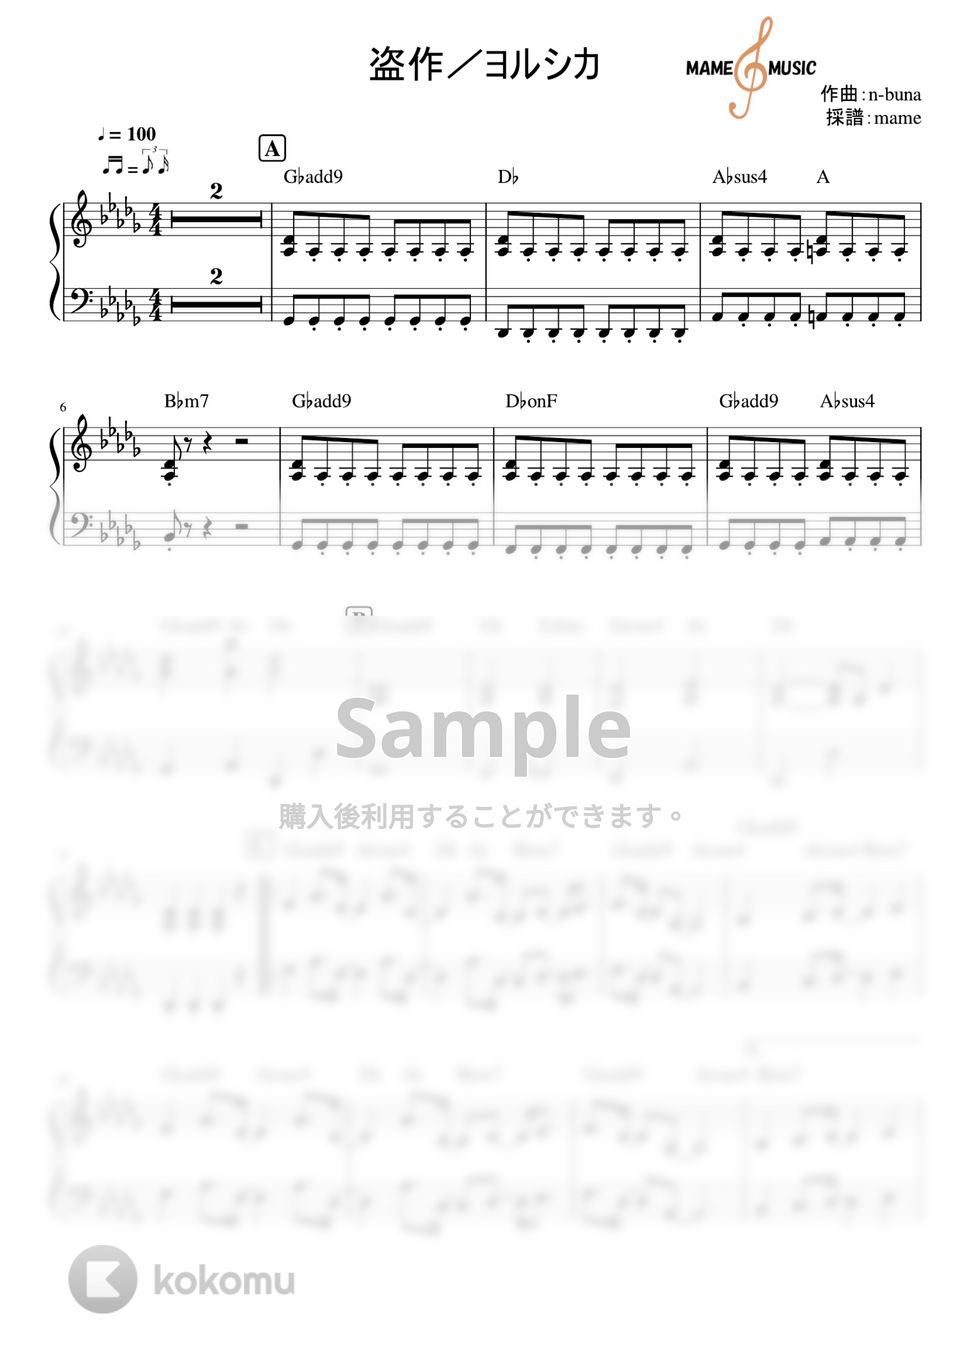 ヨルシカ - 盗作(ピアノパート) (ピアノパート) by mame